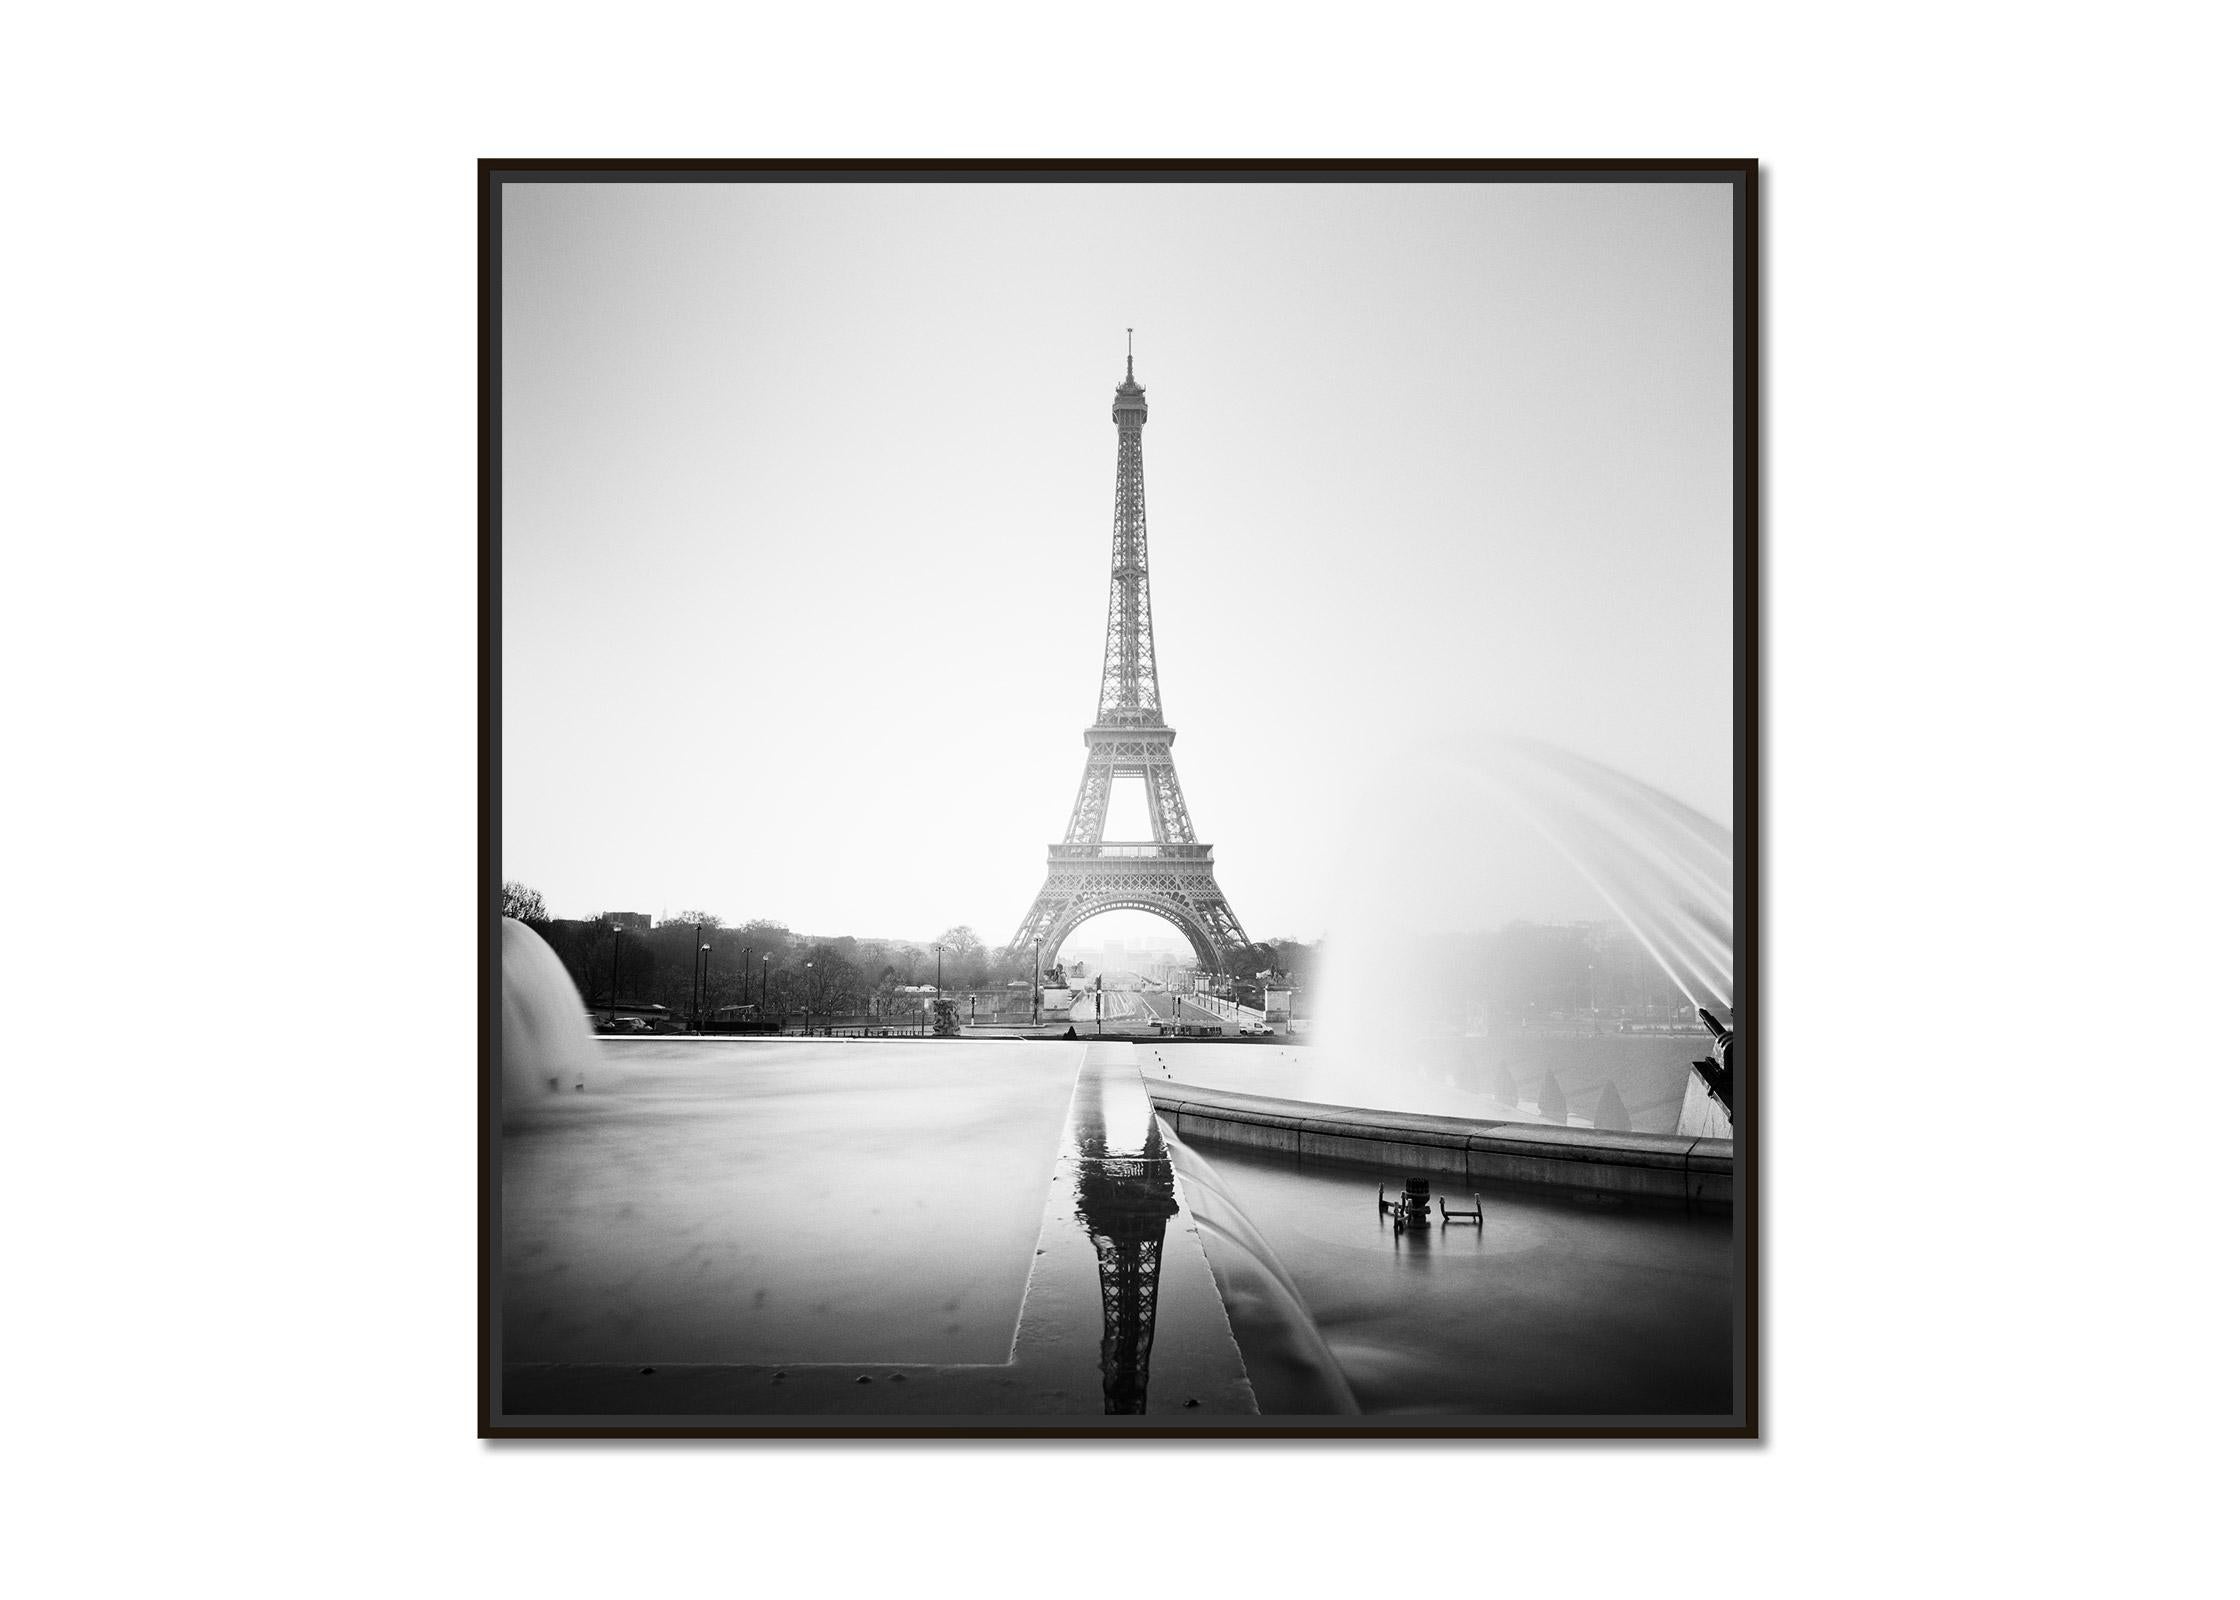 Eiffelturm Fontaine du trocadero Paris, Schwarz-Weiß-Stadtlandschaftsfotografie – Photograph von Gerald Berghammer, Ina Forstinger